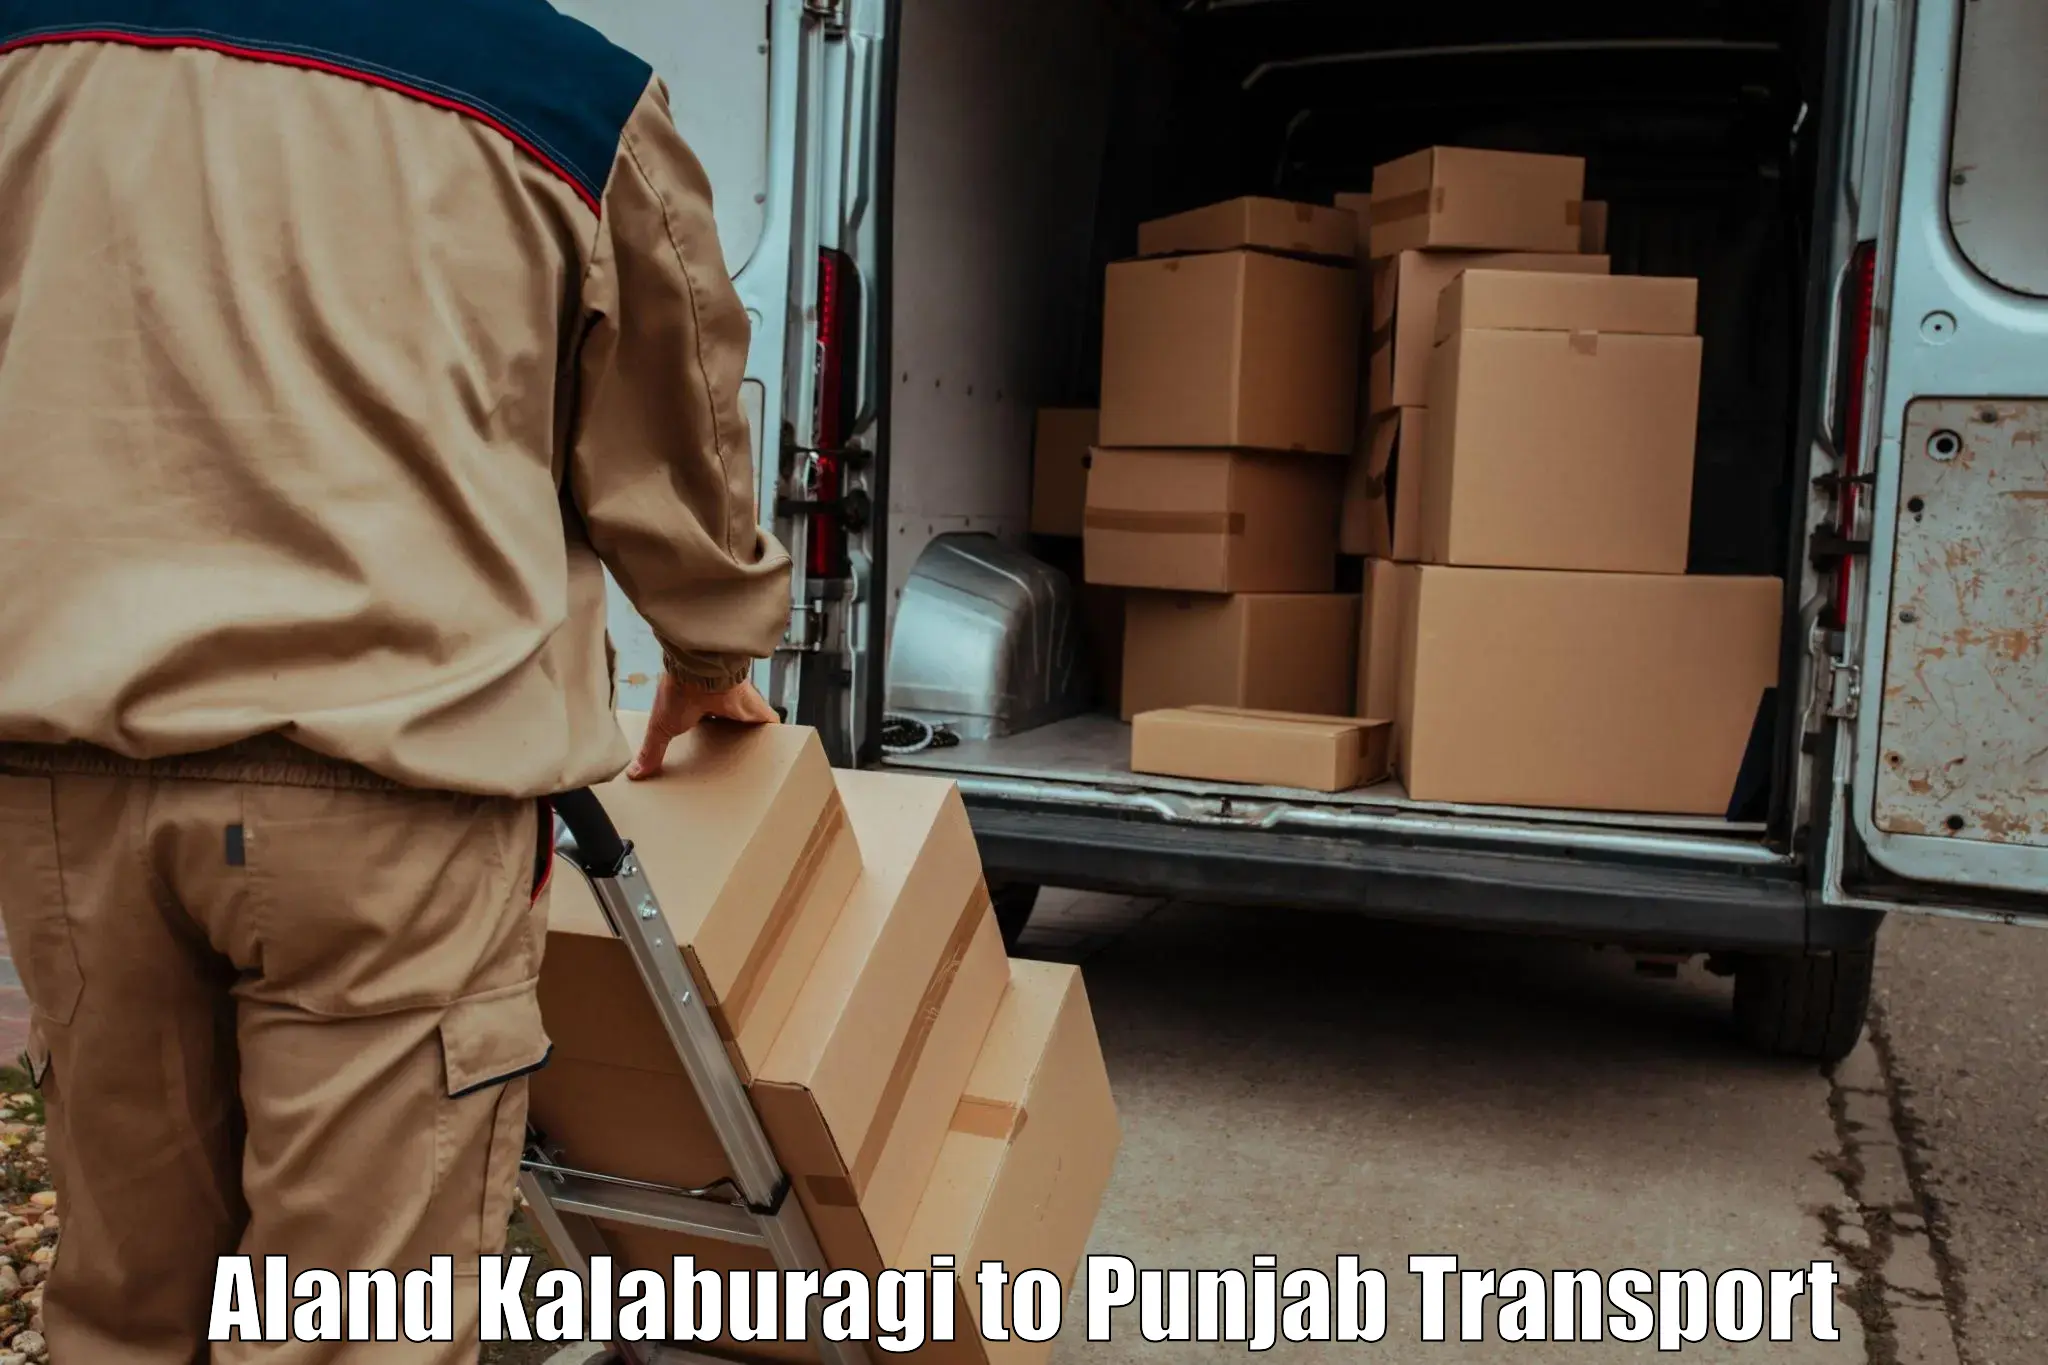 Vehicle transport services Aland Kalaburagi to Punjab